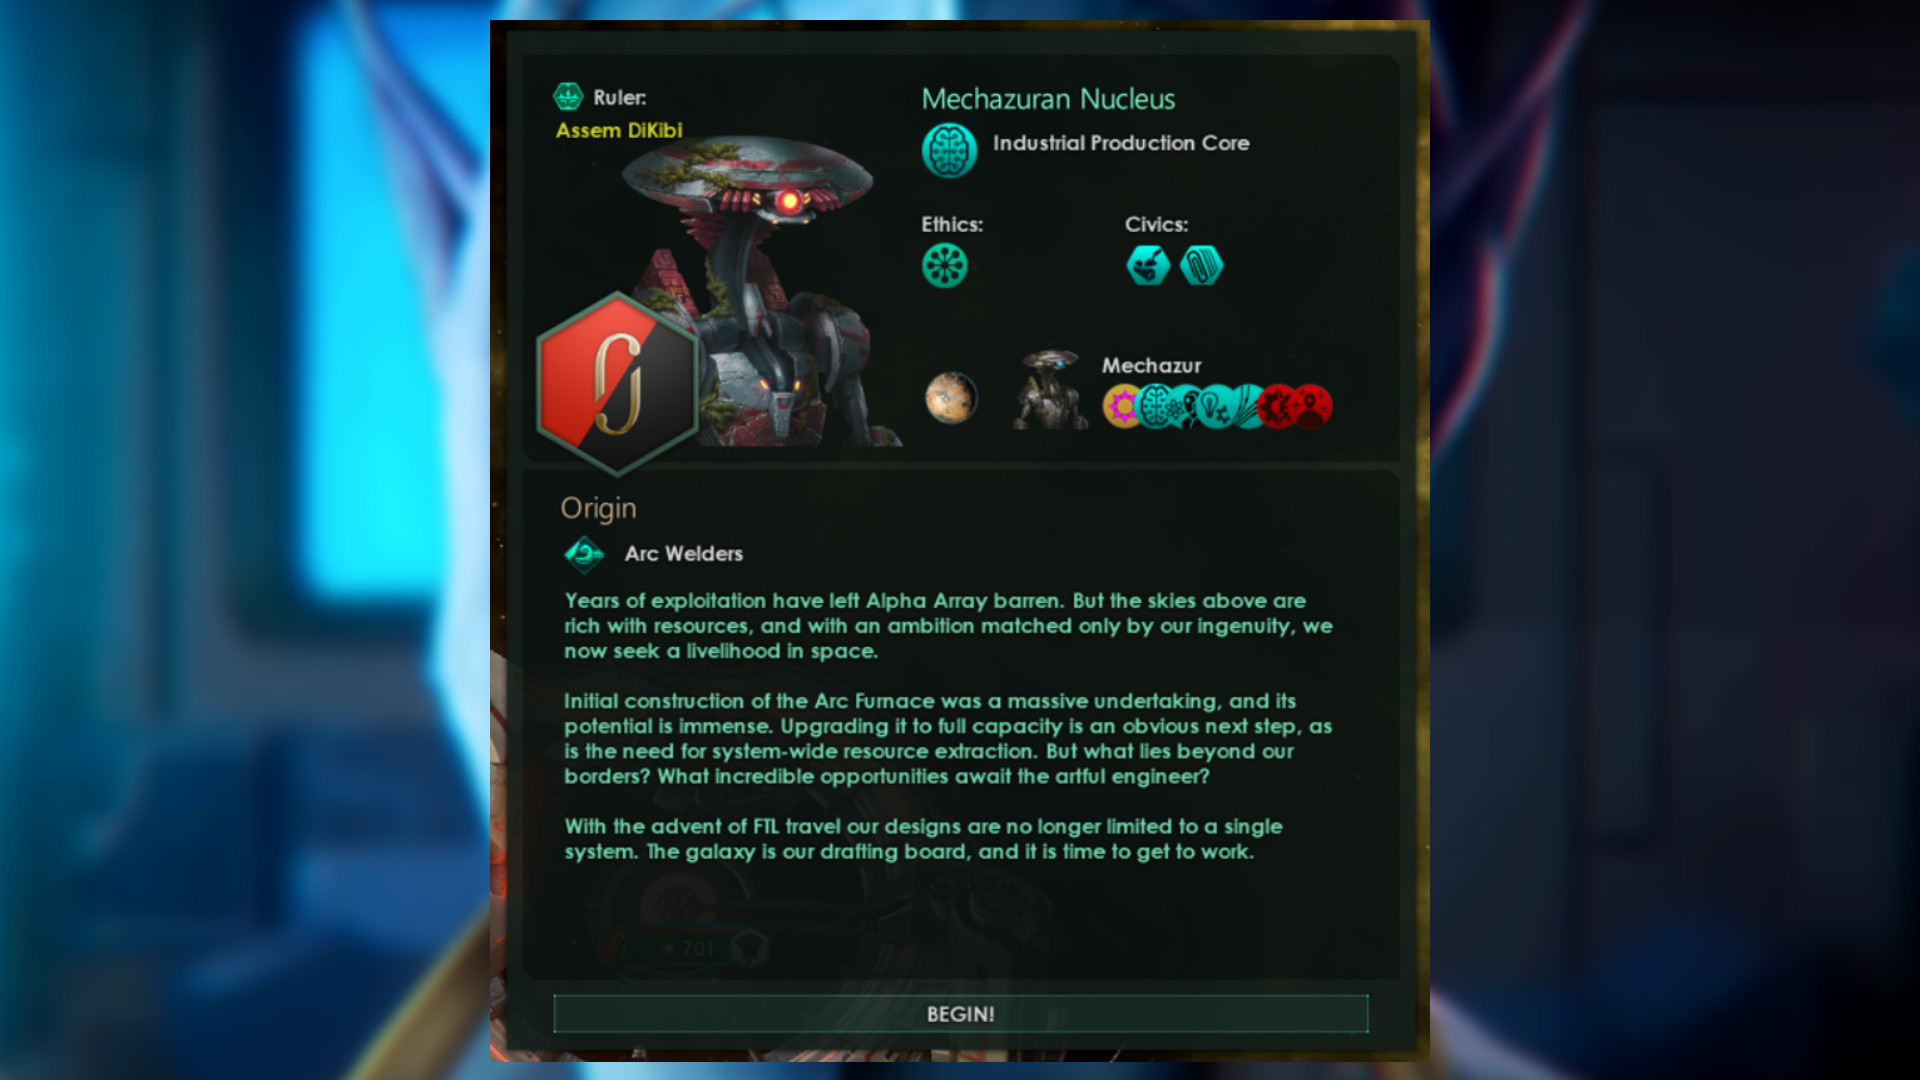 Stellaris The Machine Age – Eine Beschreibung des Ursprungs der Arc Welders im großen Strategiespiel Space 4X.